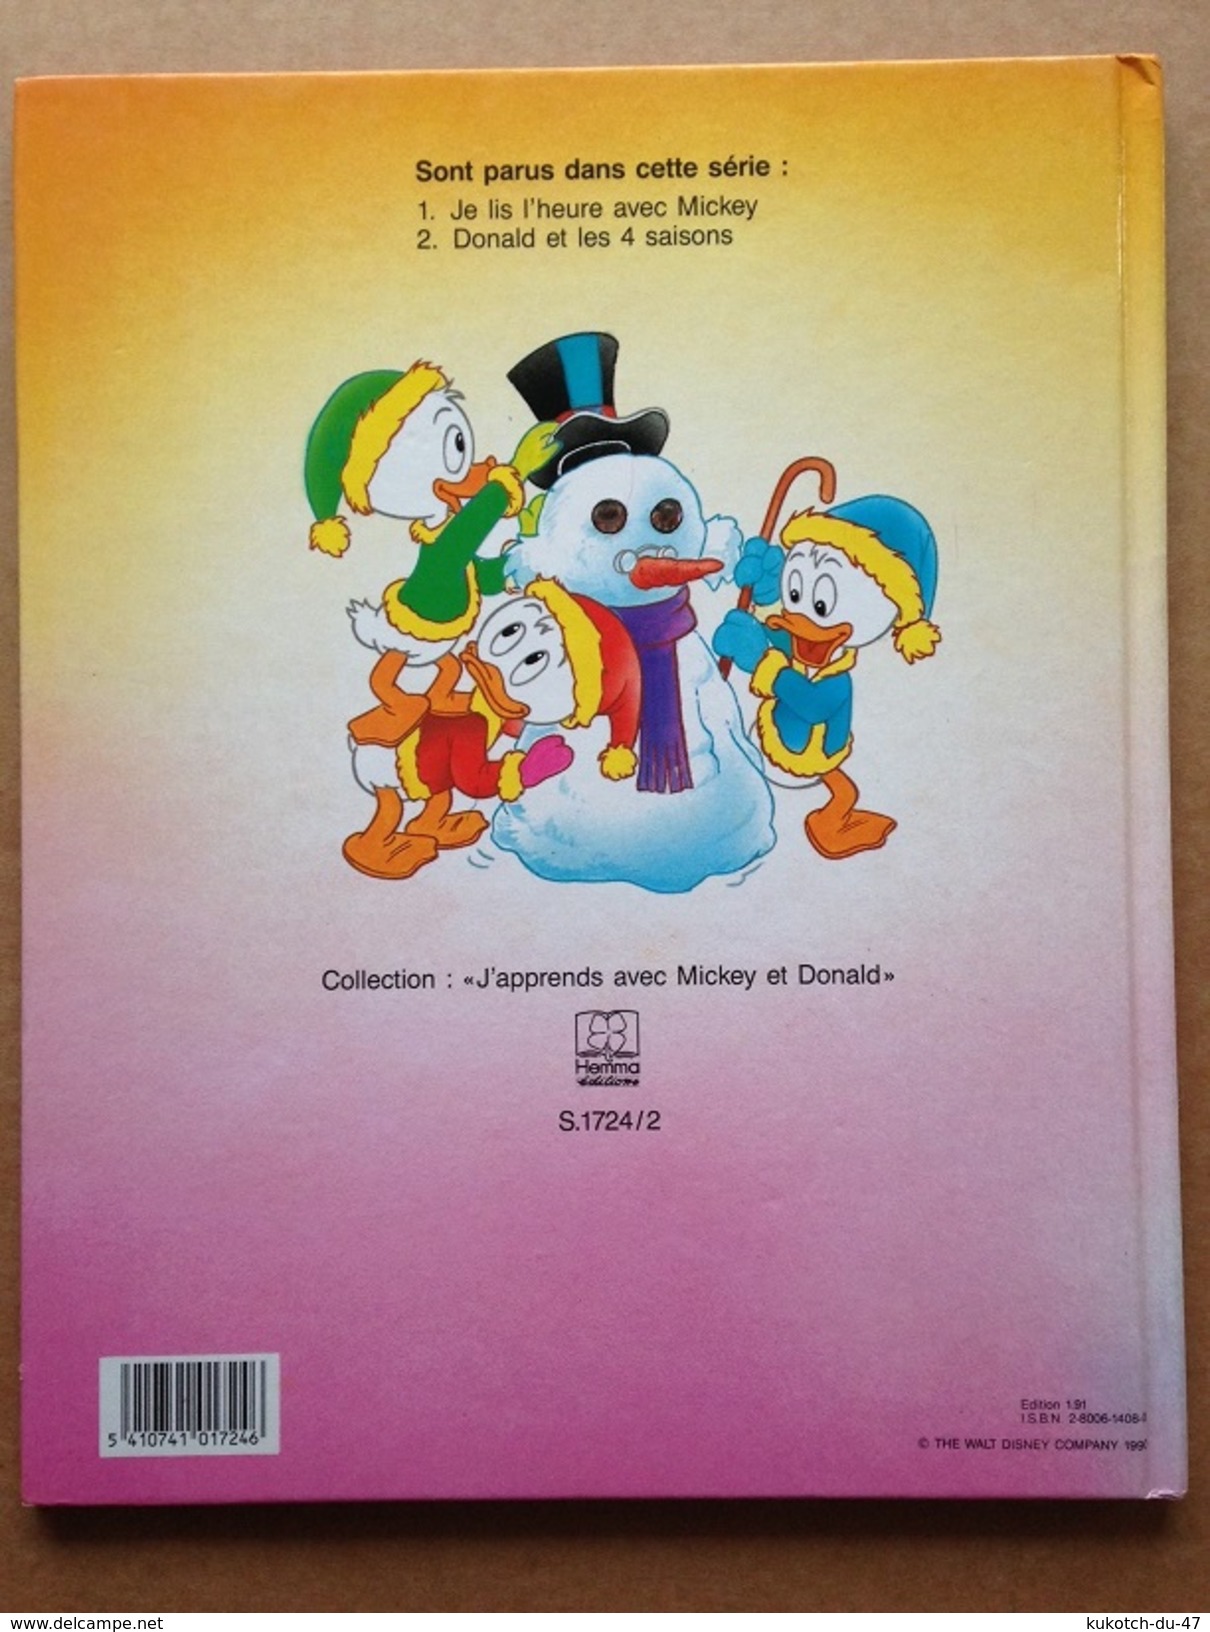 Disney Donald et les 4 saisons (1991)